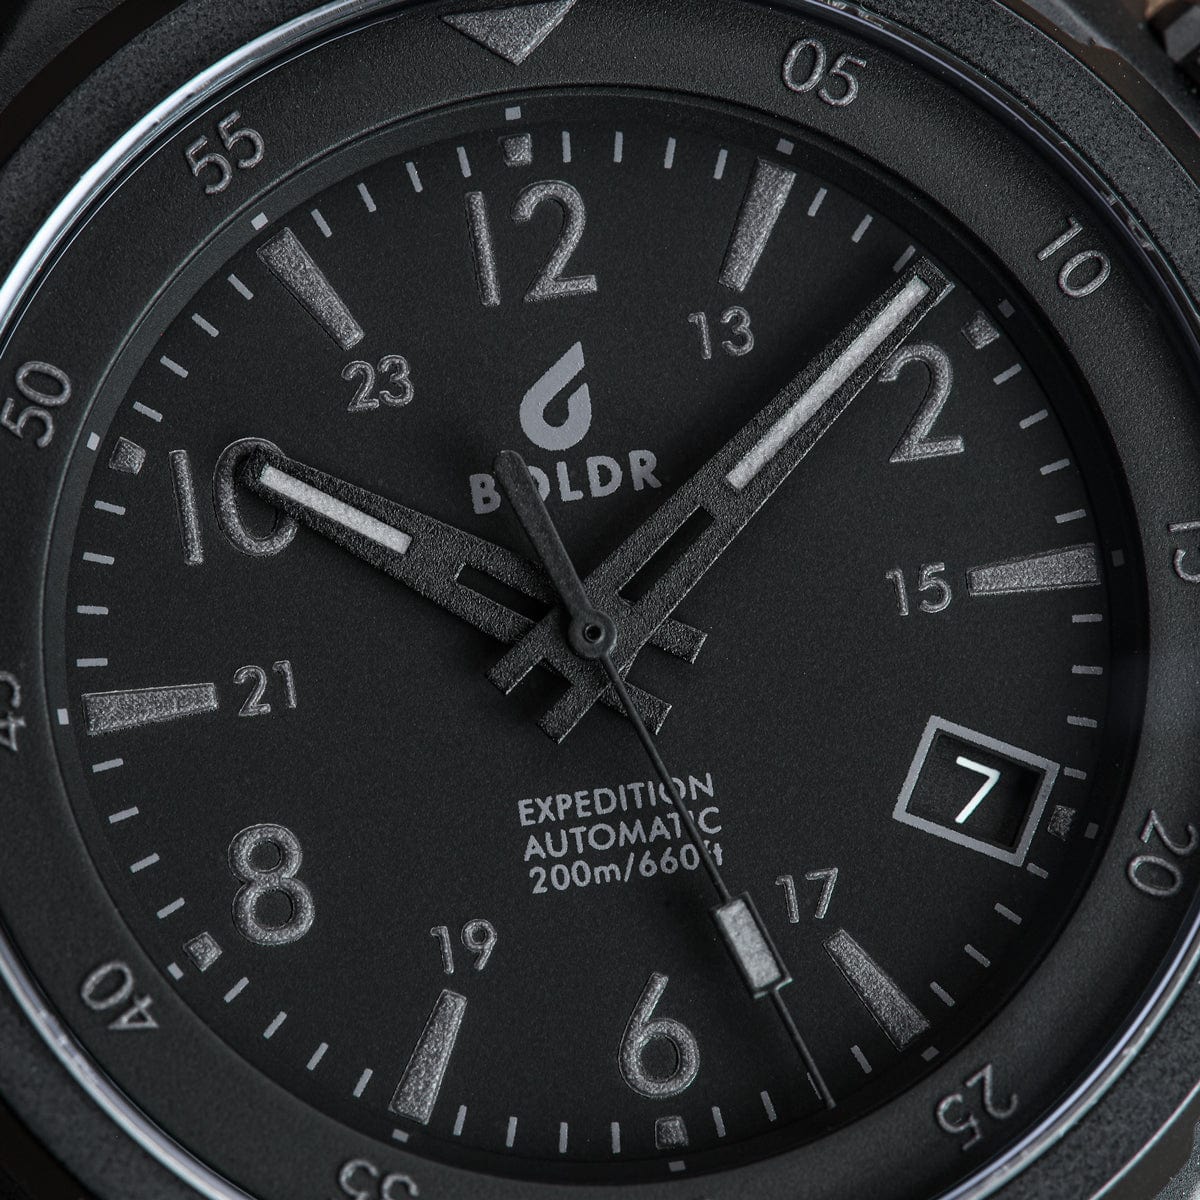 Boldr Expedition II Matterhorn Automatic Watch  